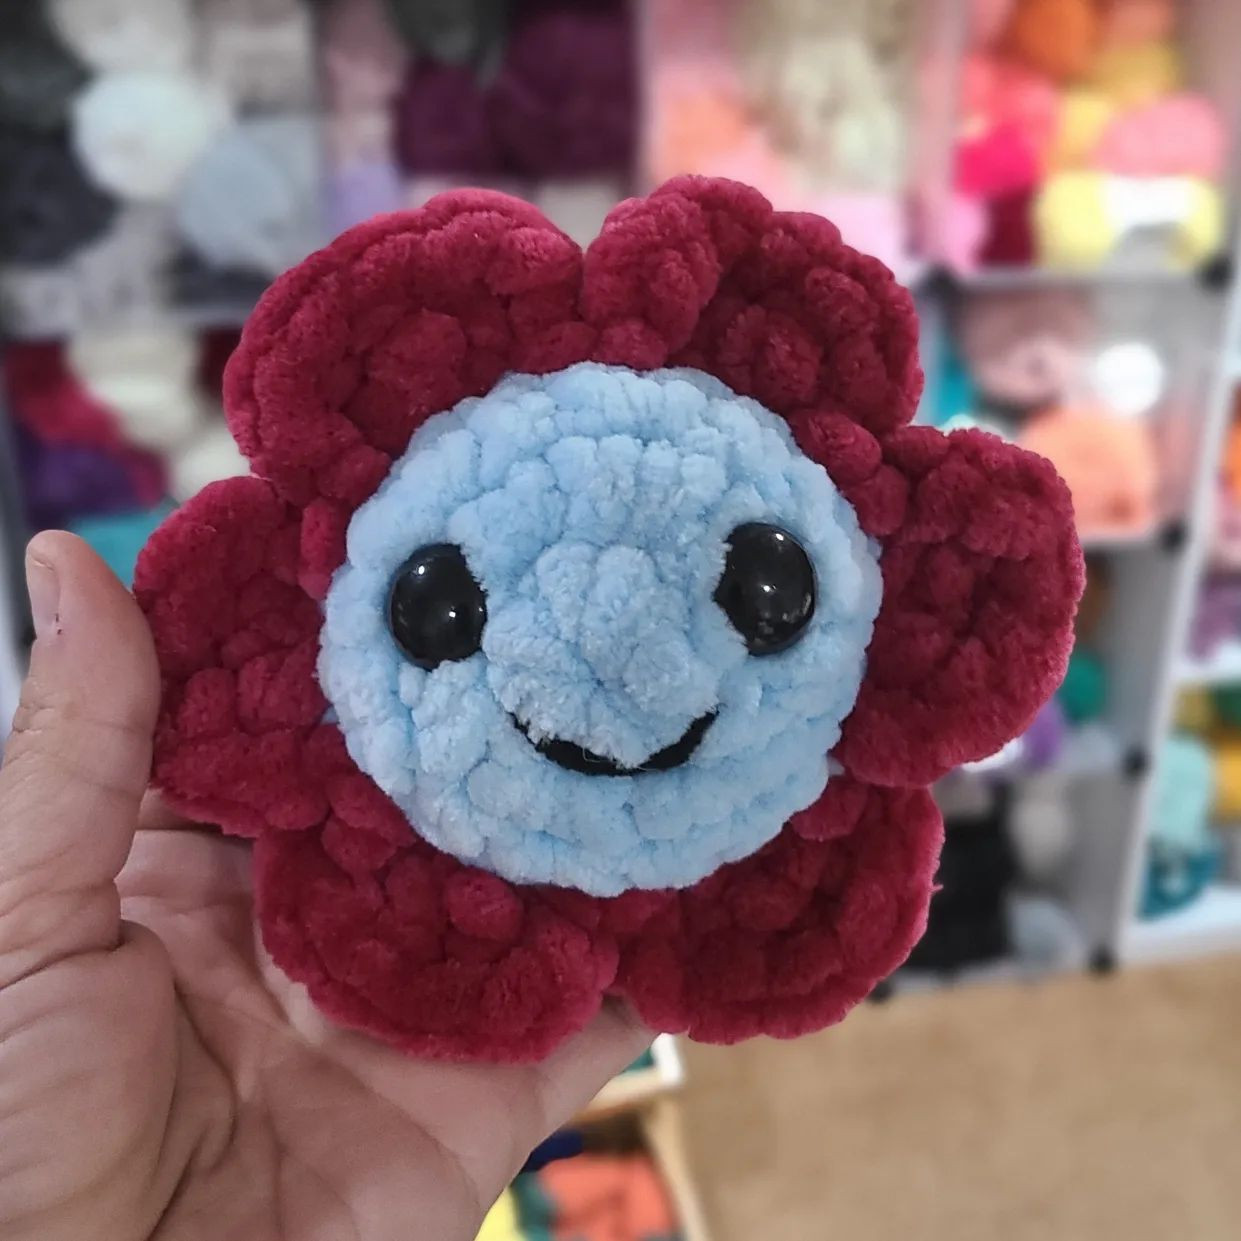 crochet flowers behind the wings